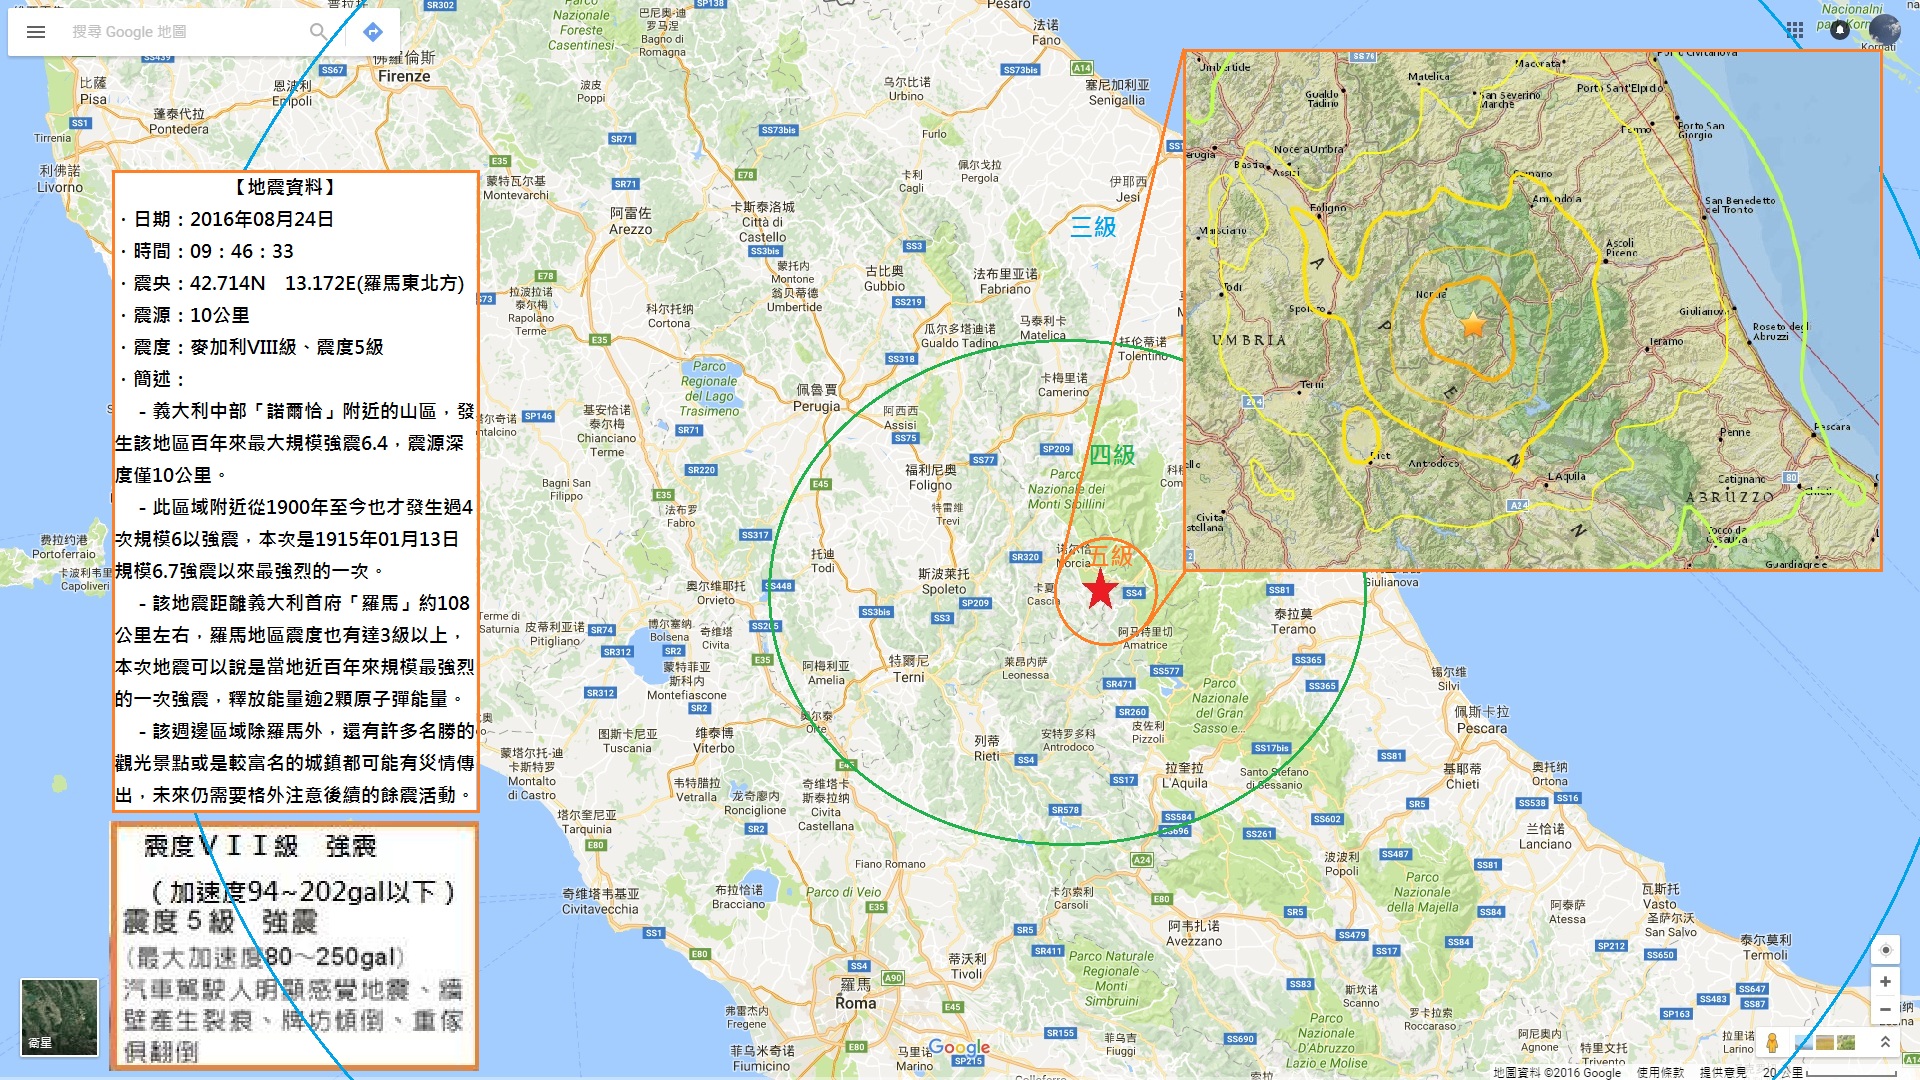 358.2016.08.24 義大利中部6.4規模強震深度10公里.jpg